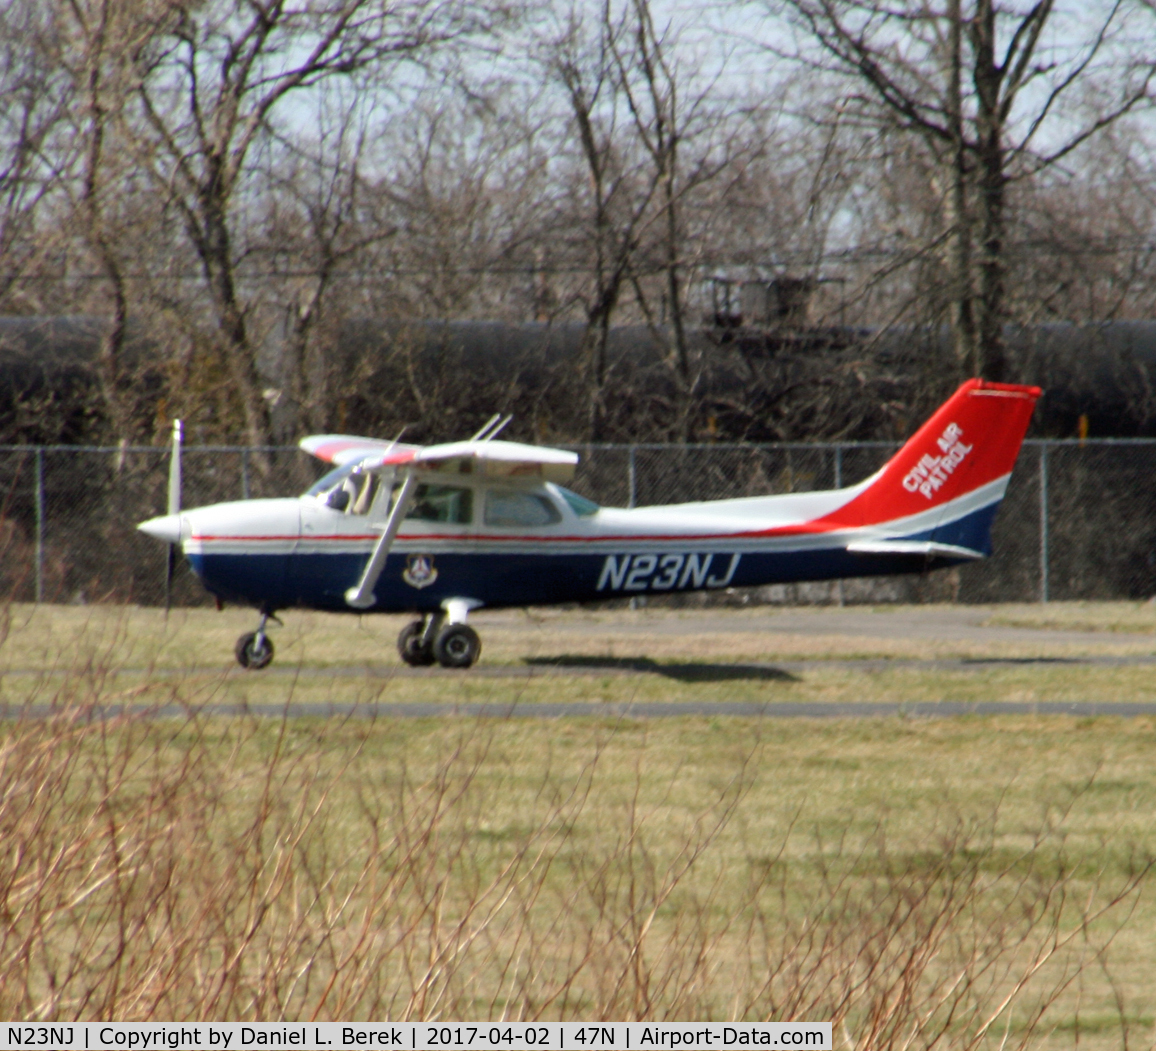 N23NJ, 1979 Cessna 172N C/N 17273230, It's always nice to spot one of these Civil Air Patrol birds!